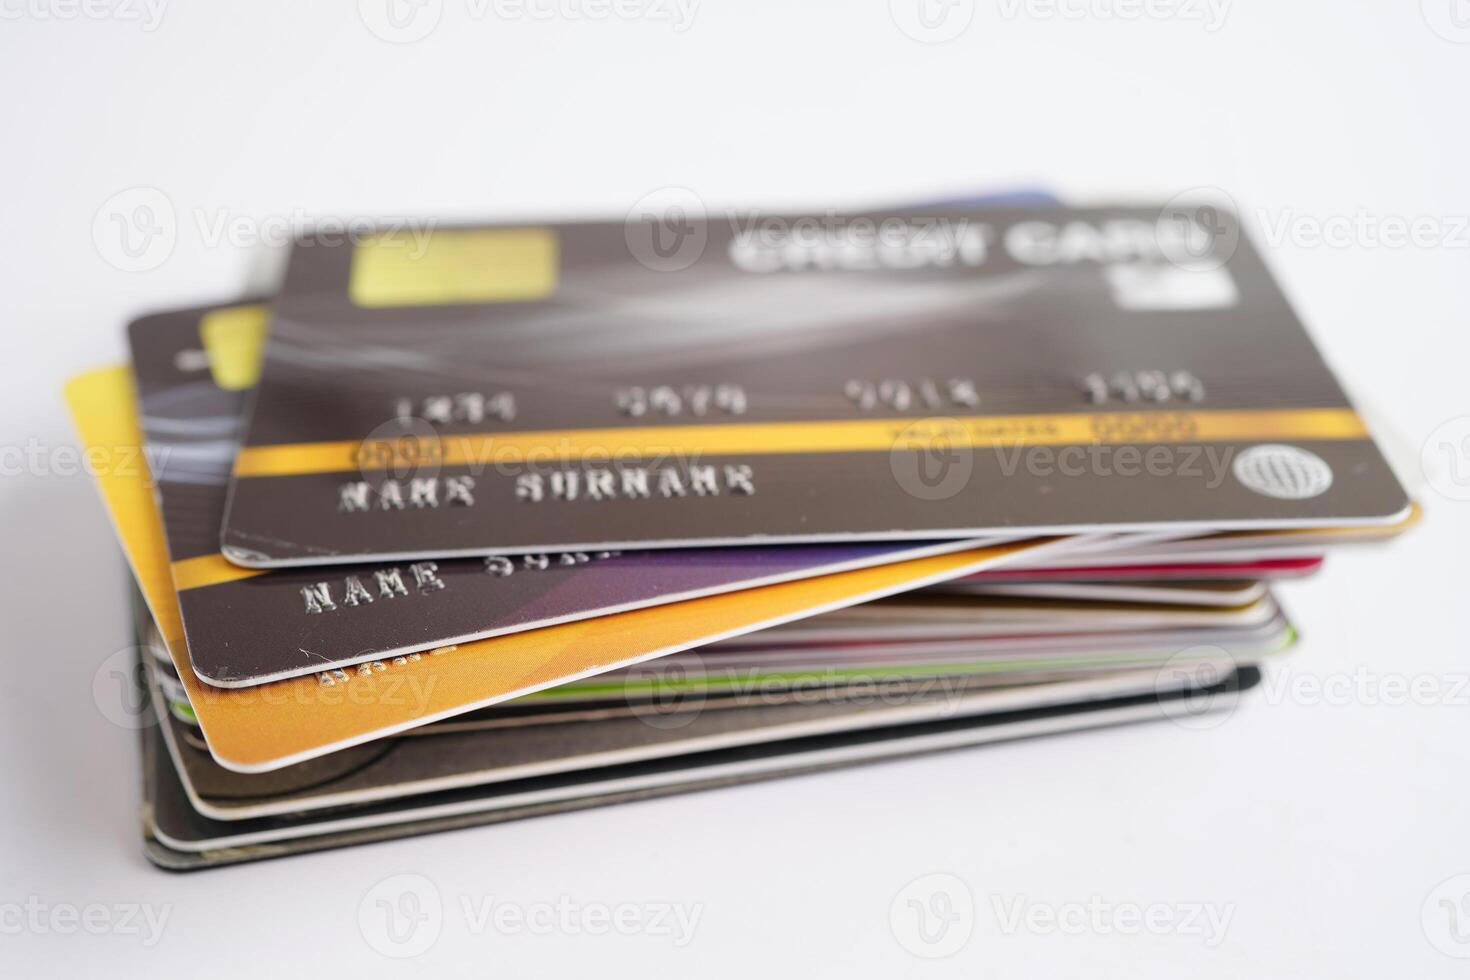 kreditkort för online shopping, affärsidé för säkerhetsfinansiering. foto